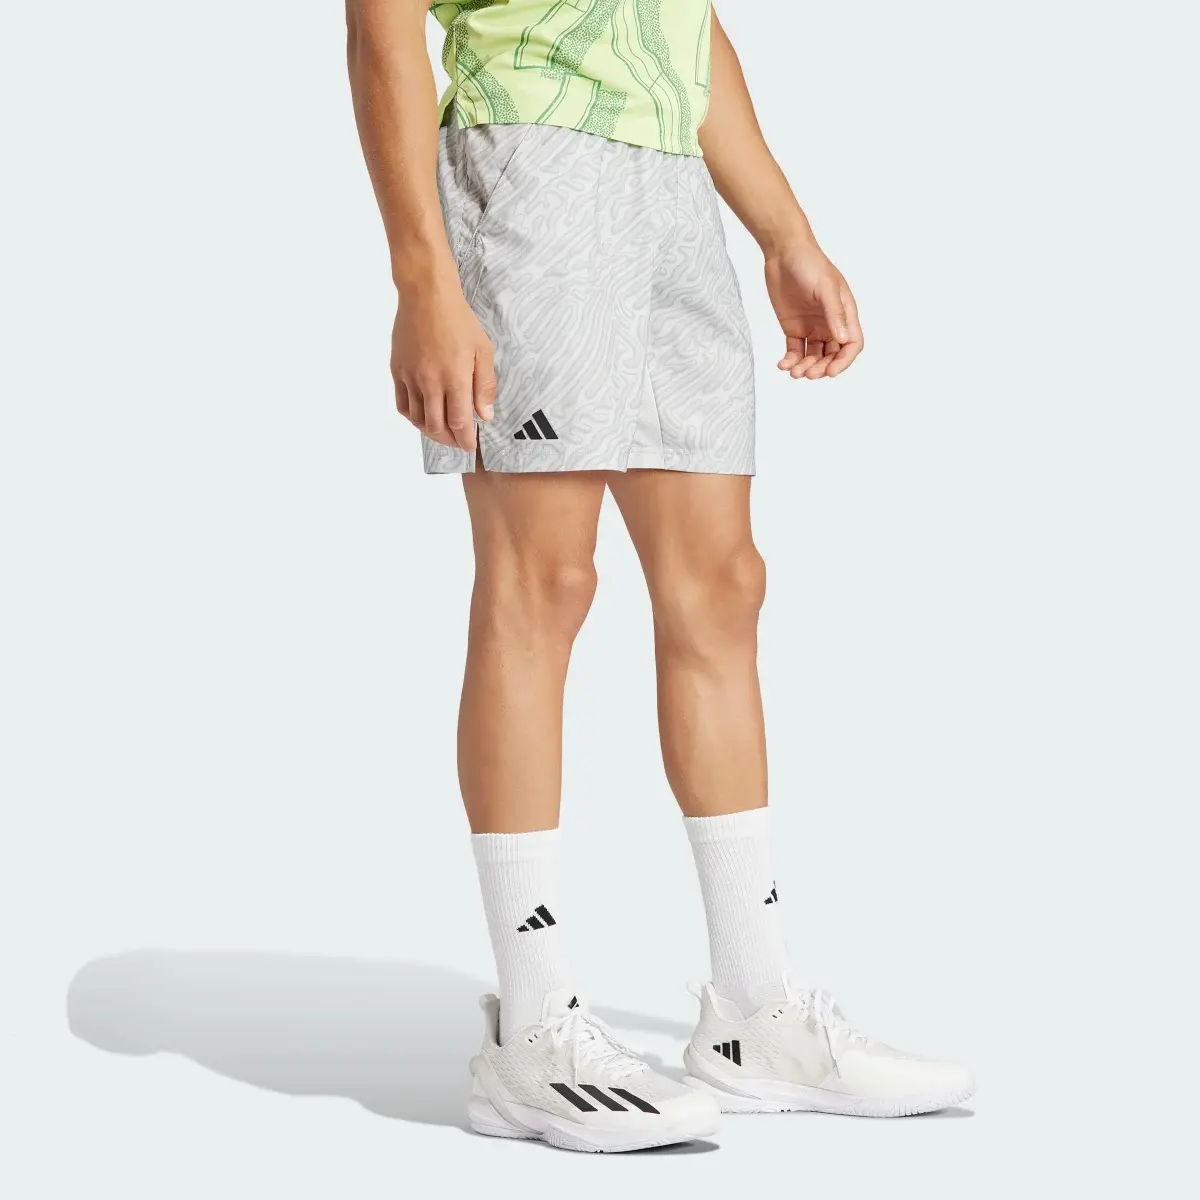 Adidas Short de tennis ergonomique imprimé HEAT.RDY Pro 17,8 cm. 3